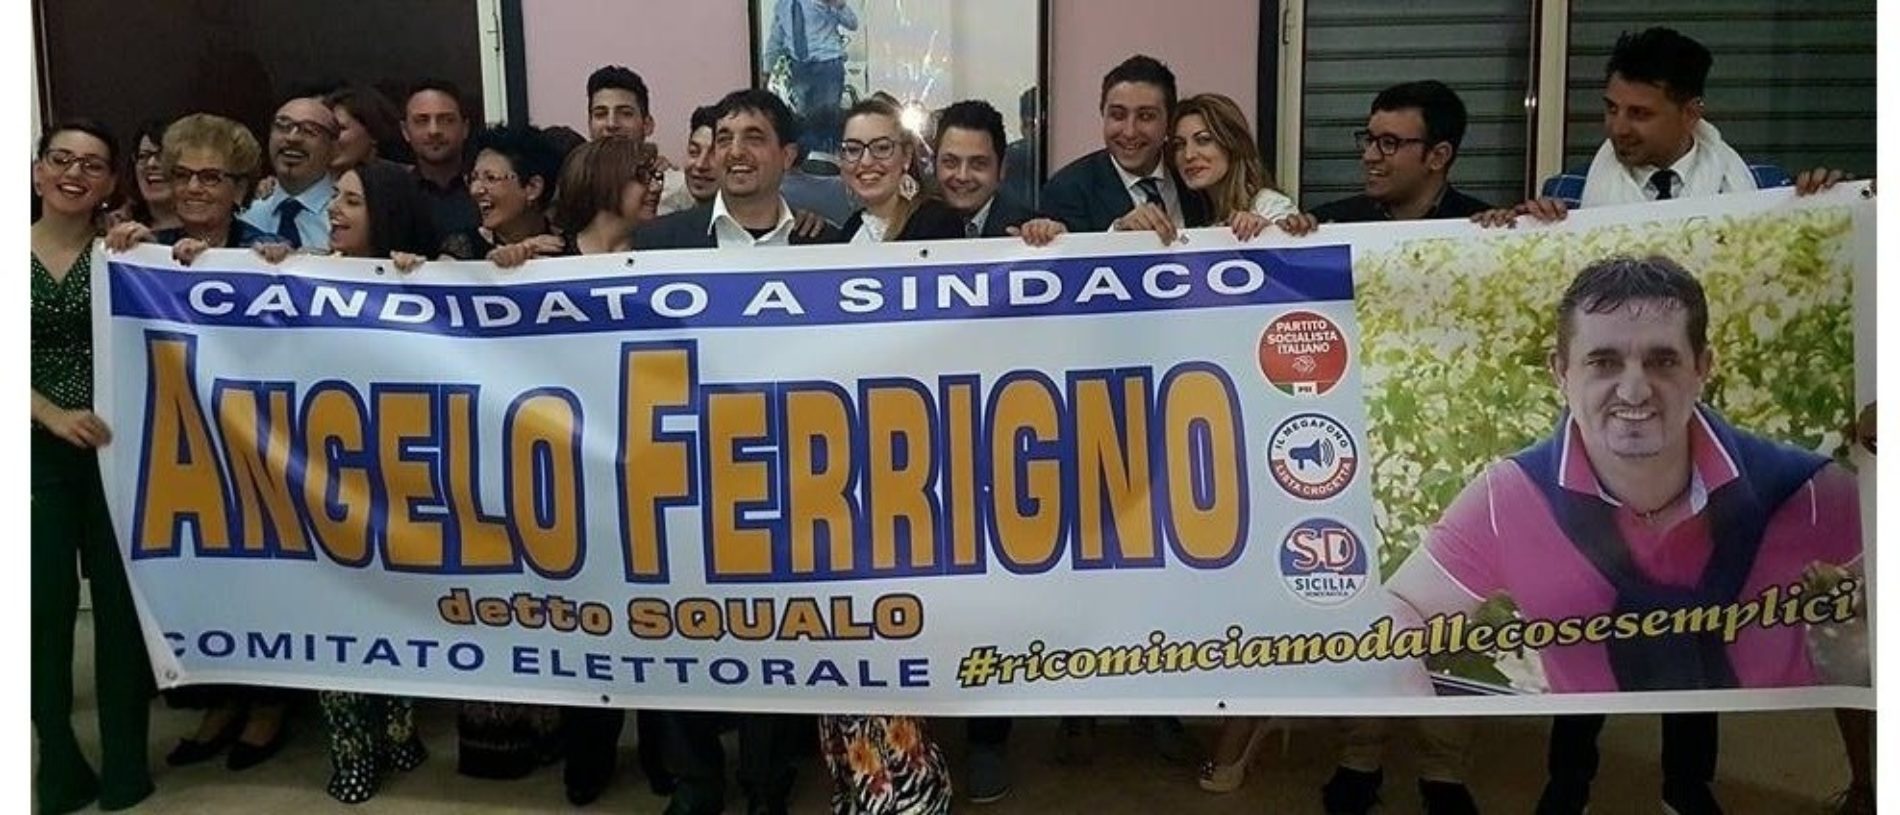 Angelo Ferrigno presenta i 47 candidati al consiglio comunale che lo sostengono a candidato sindaco